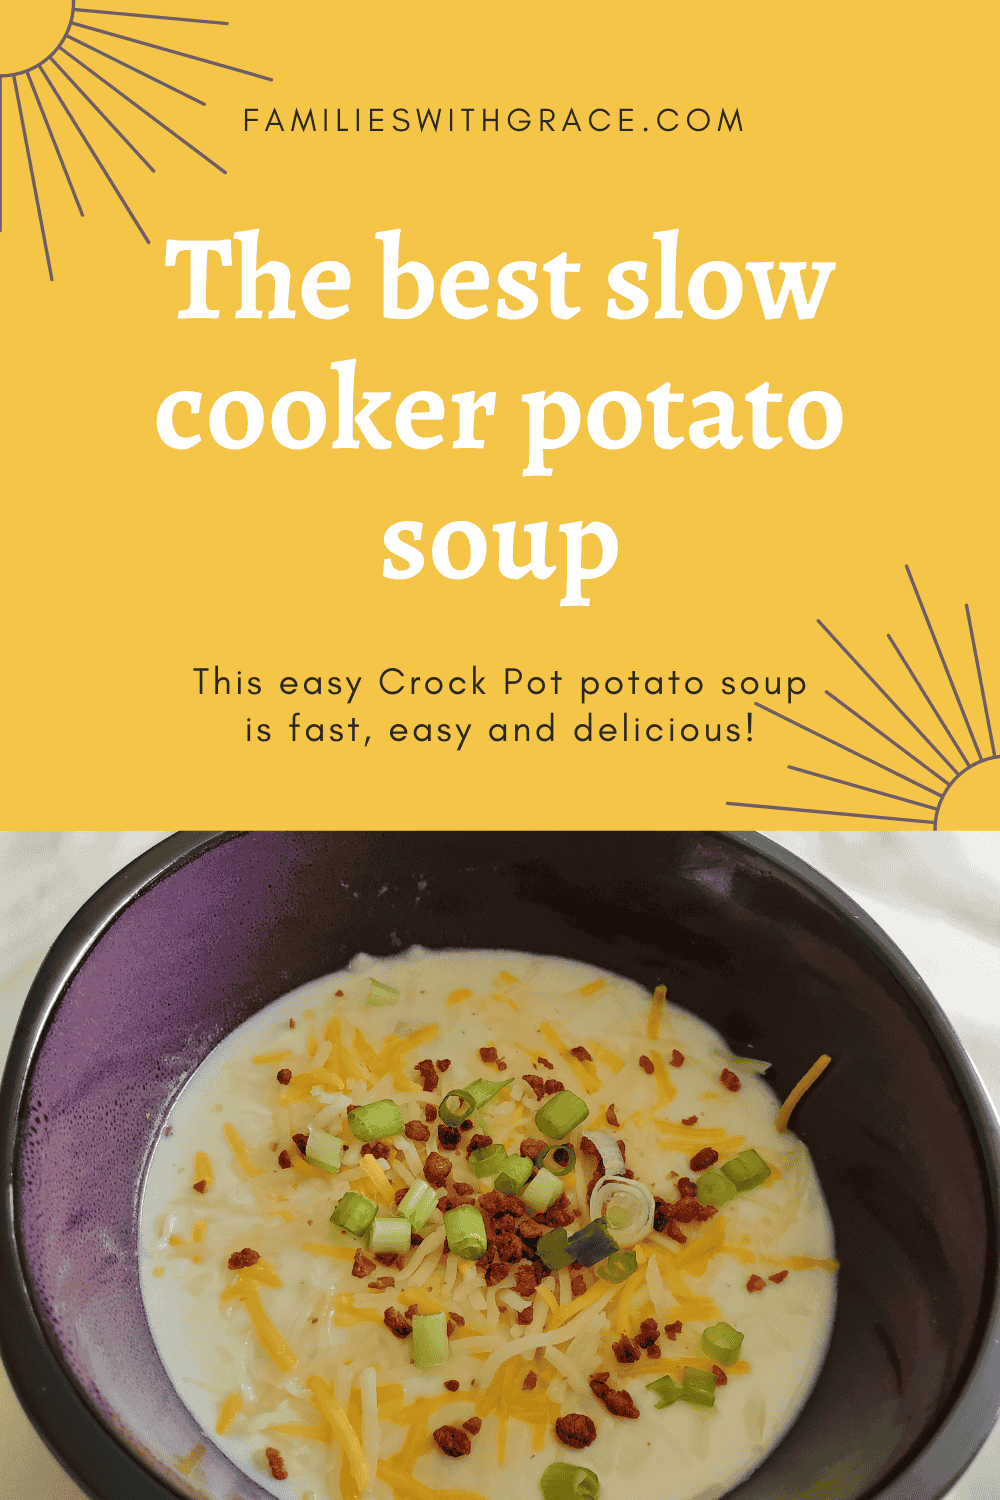 The best slow cooker potato soup